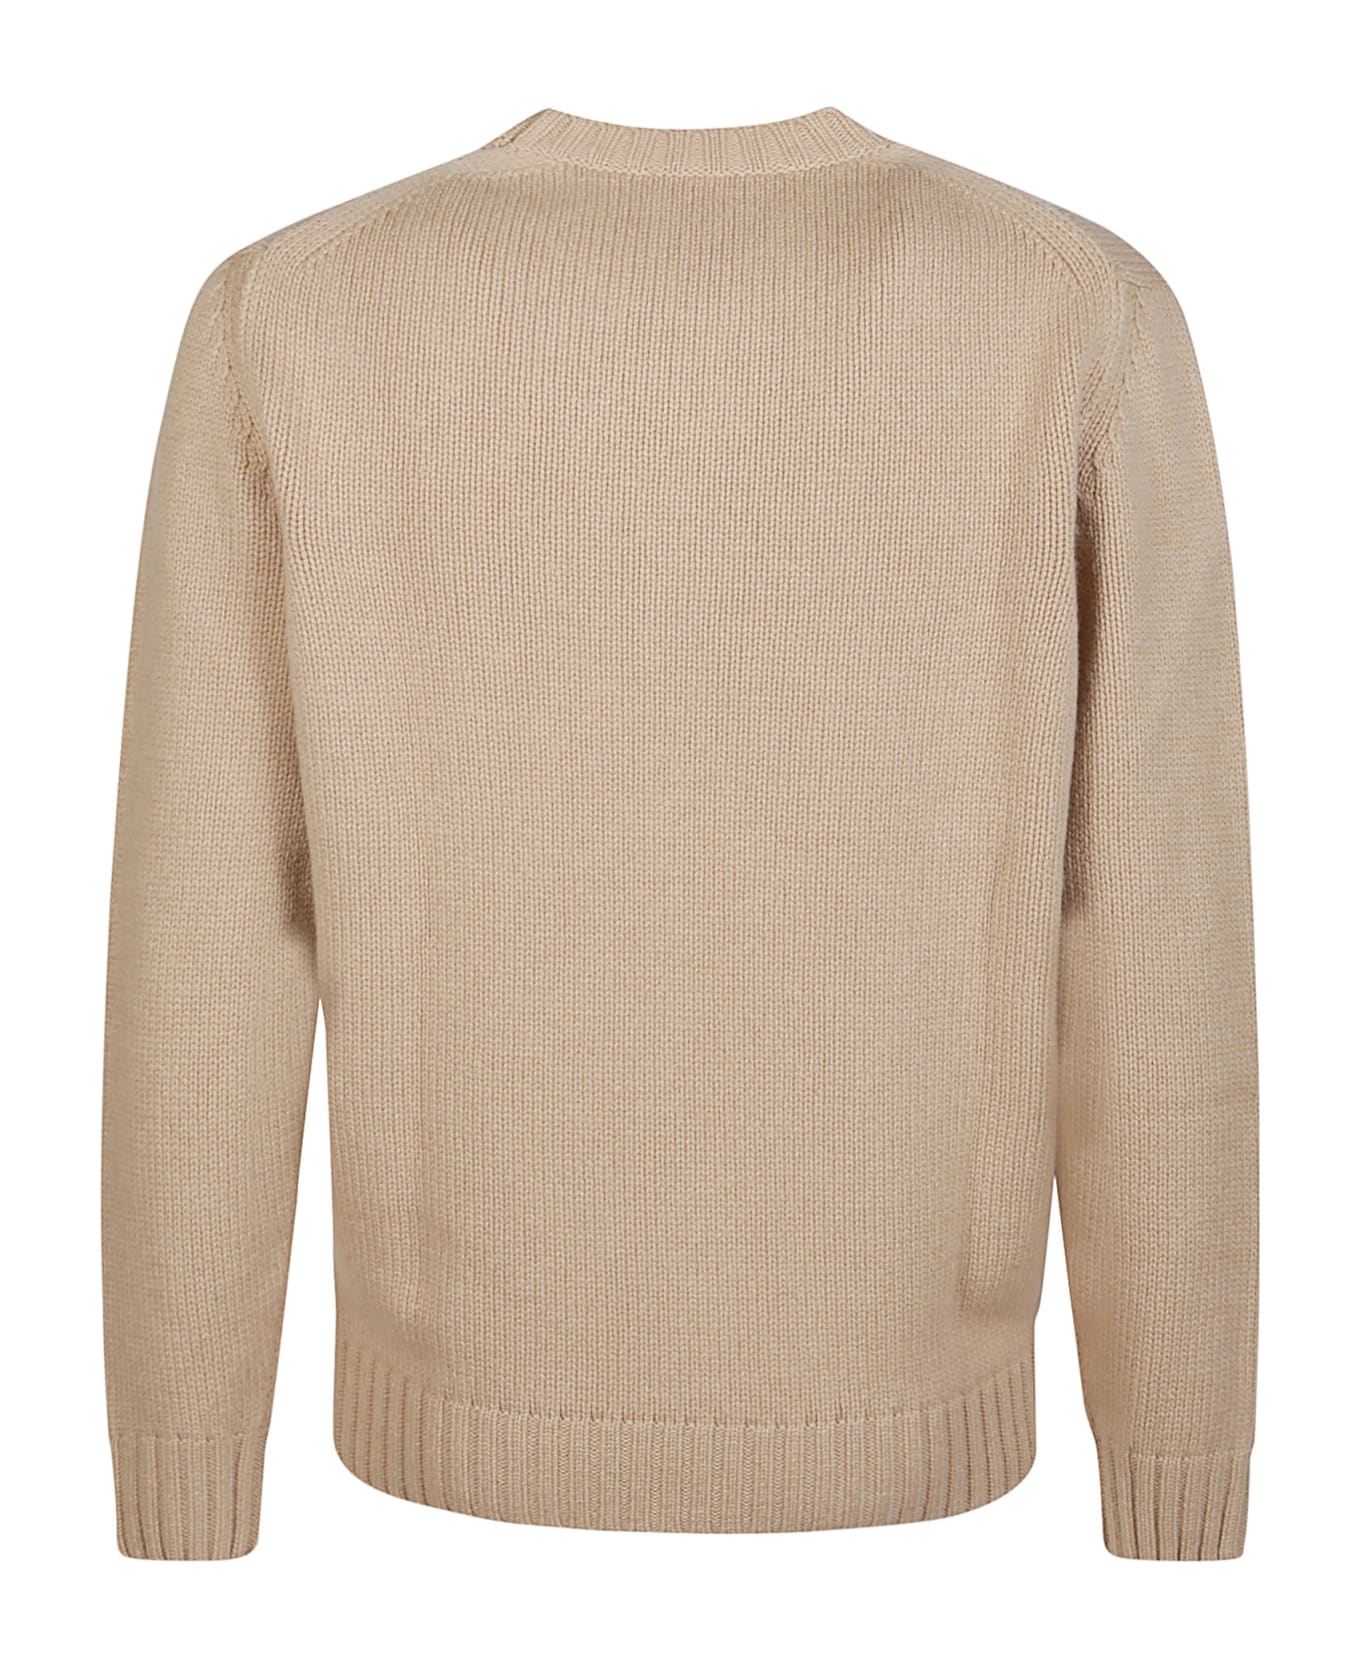 Kangra Basic Round Neck Sweater - Biscotto